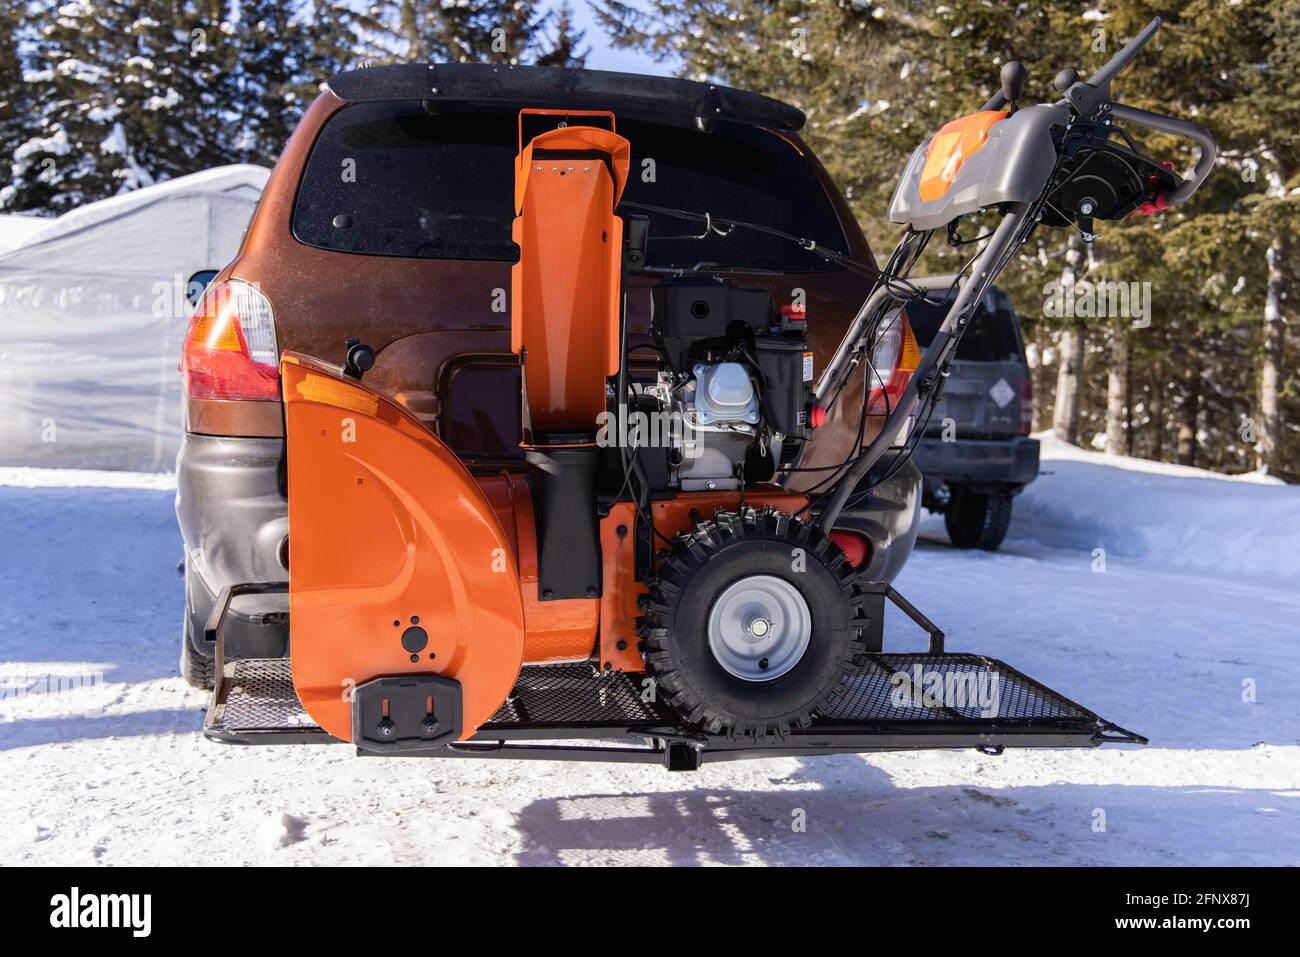 Ein leuchtend orangefarbener mechanischer Schneepflug wird vor einem Auto in einer Auffahrt geparkt, der bereit ist, in einem kanadischen Landhaus Schnee zu entfernen. Stockfoto